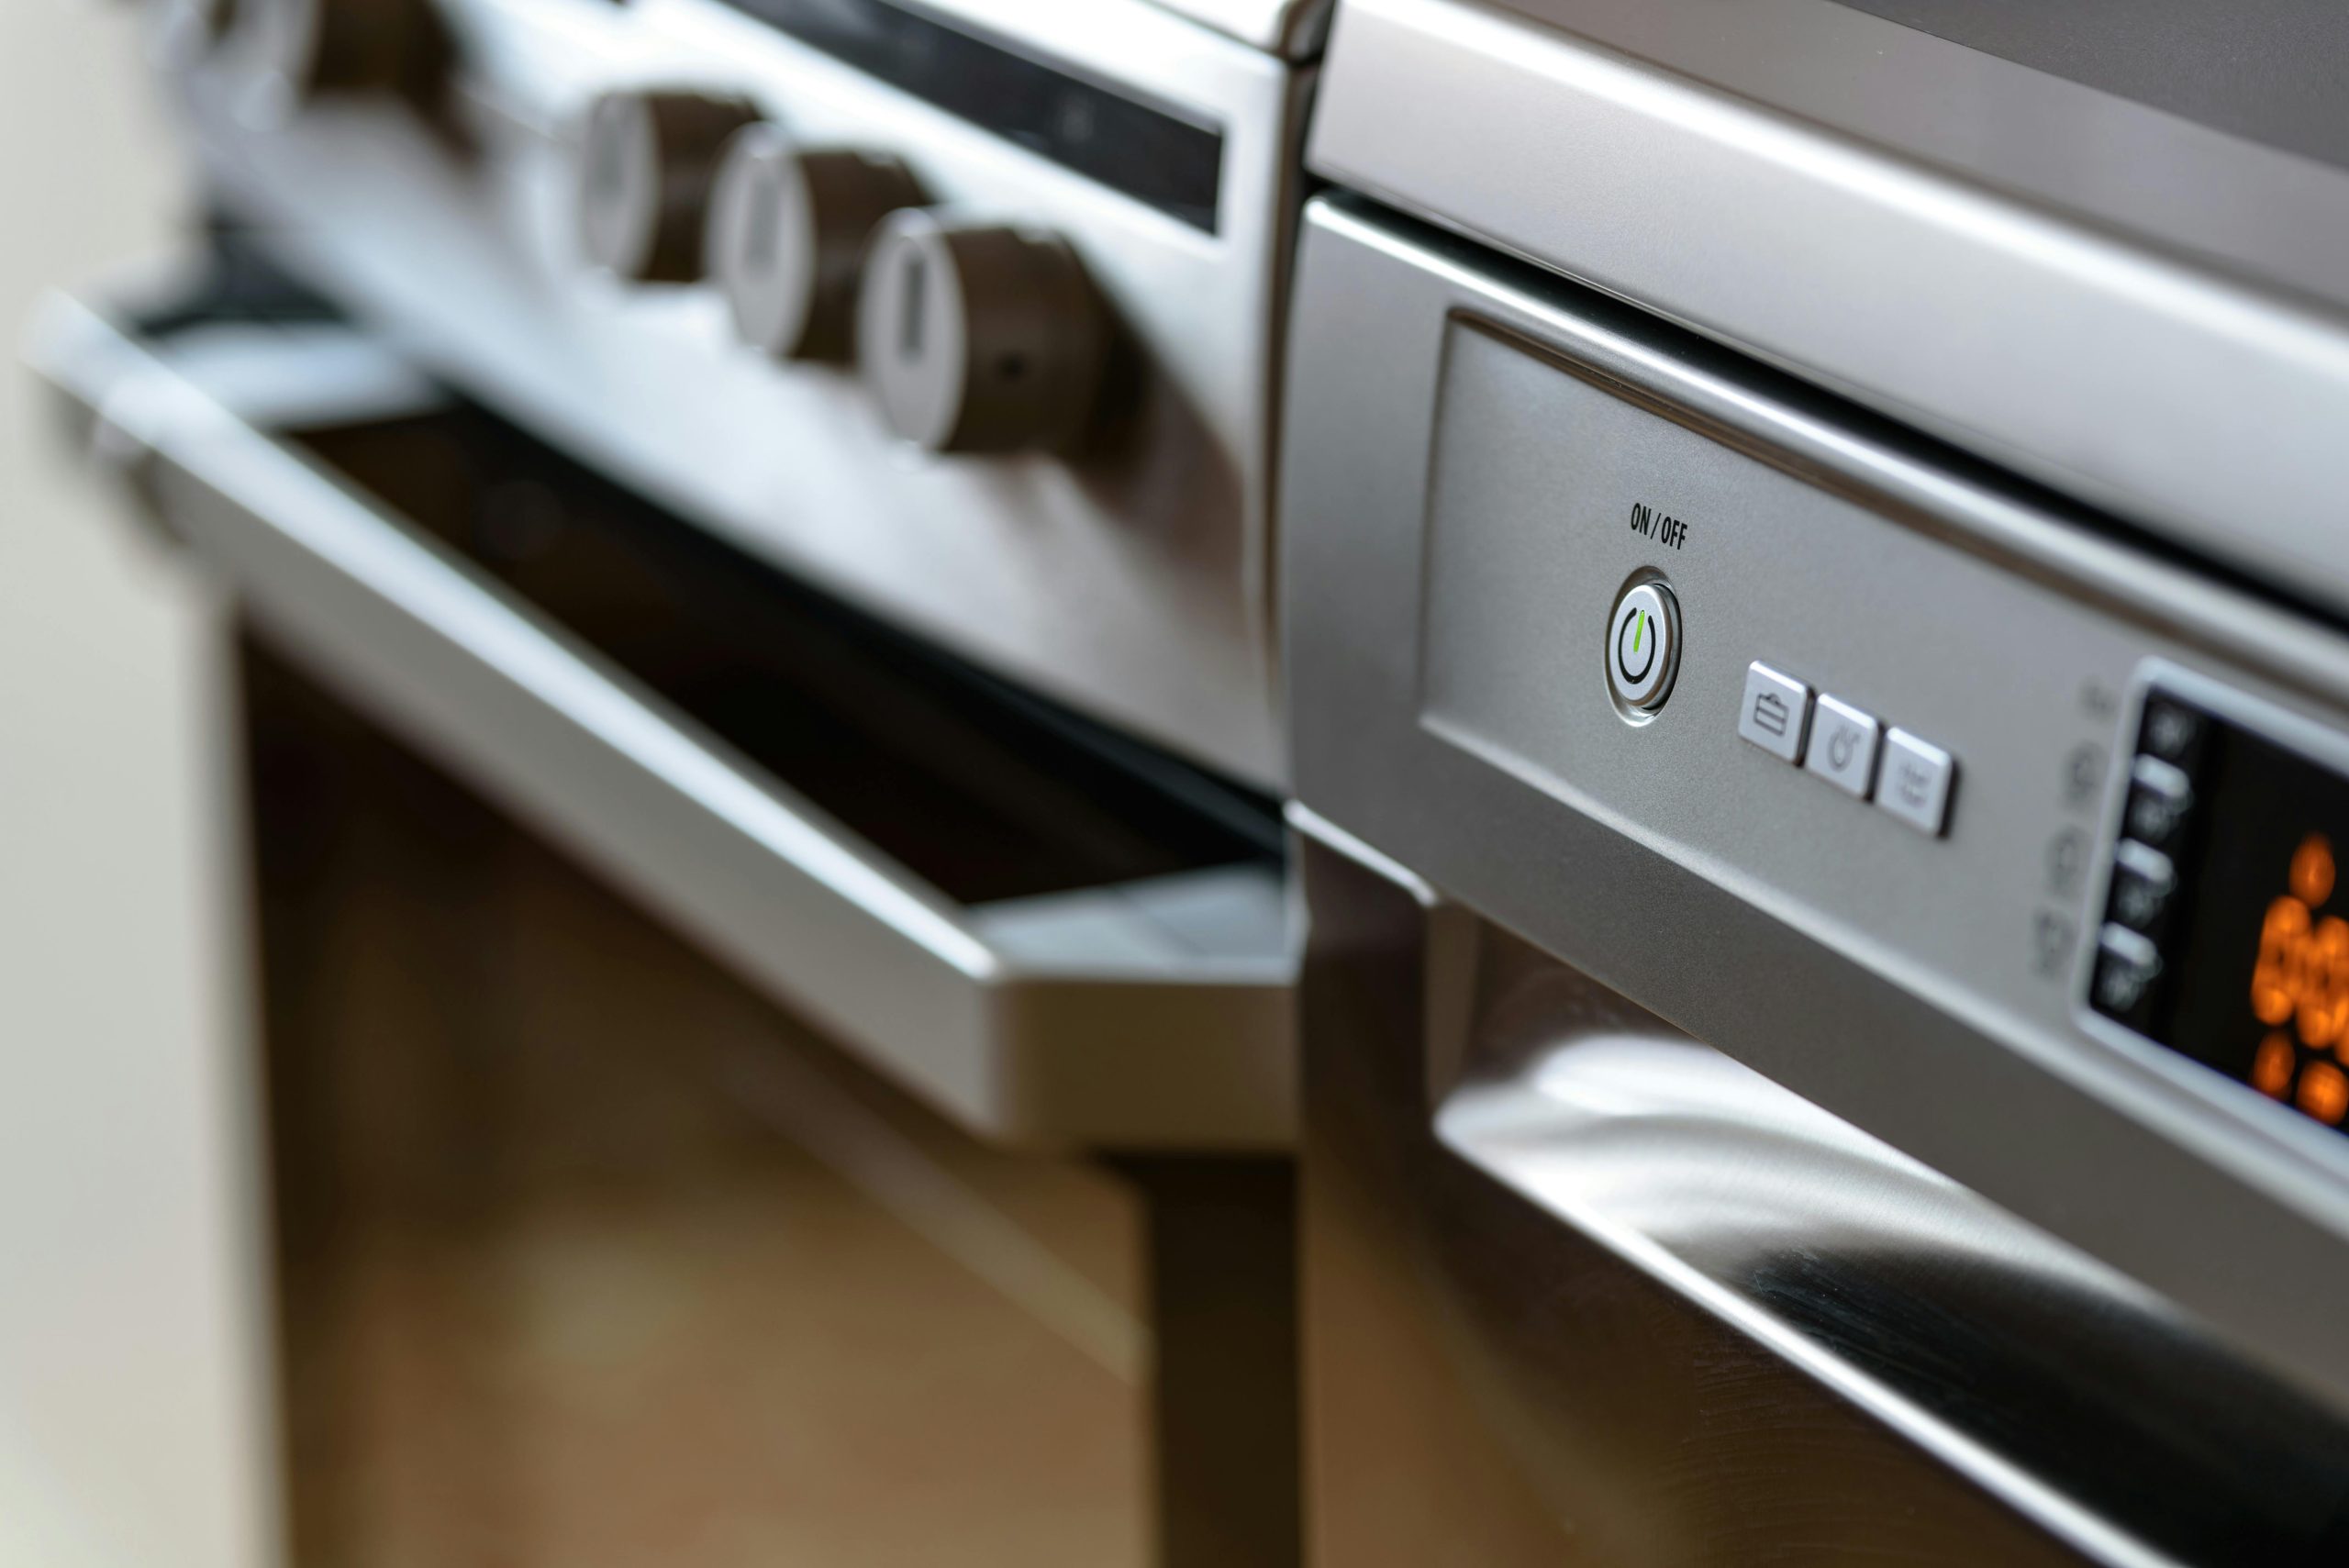 Is Pressure Cooker Dishwasher Safe